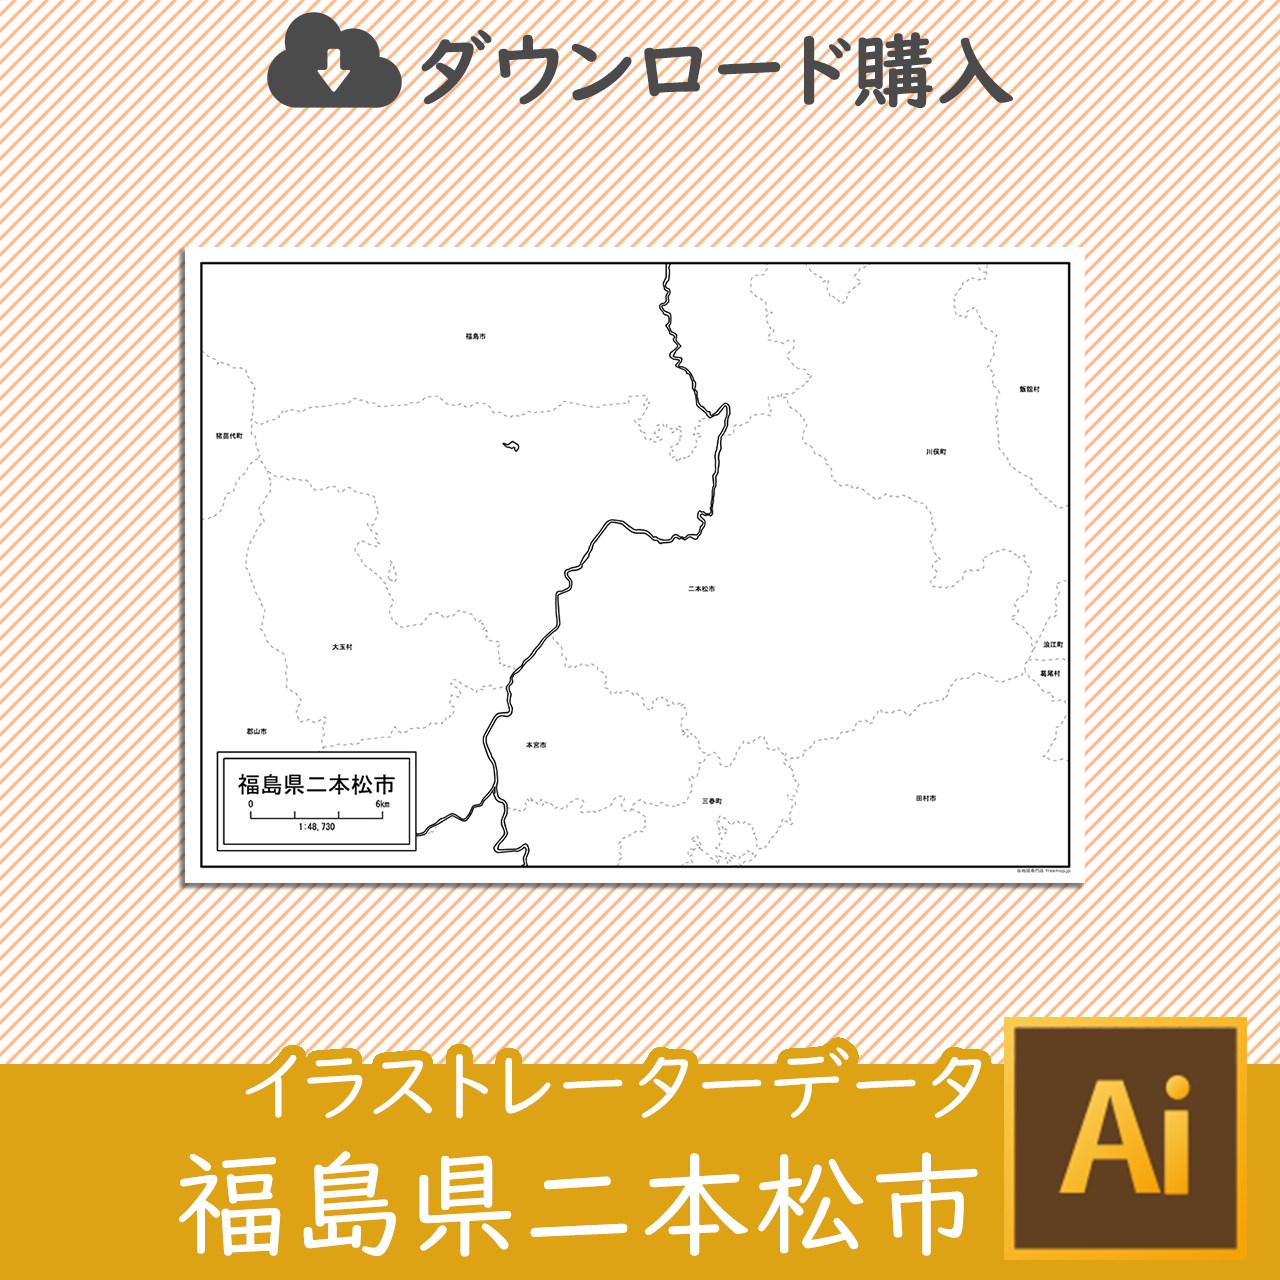 二本松市の白地図のサムネイル